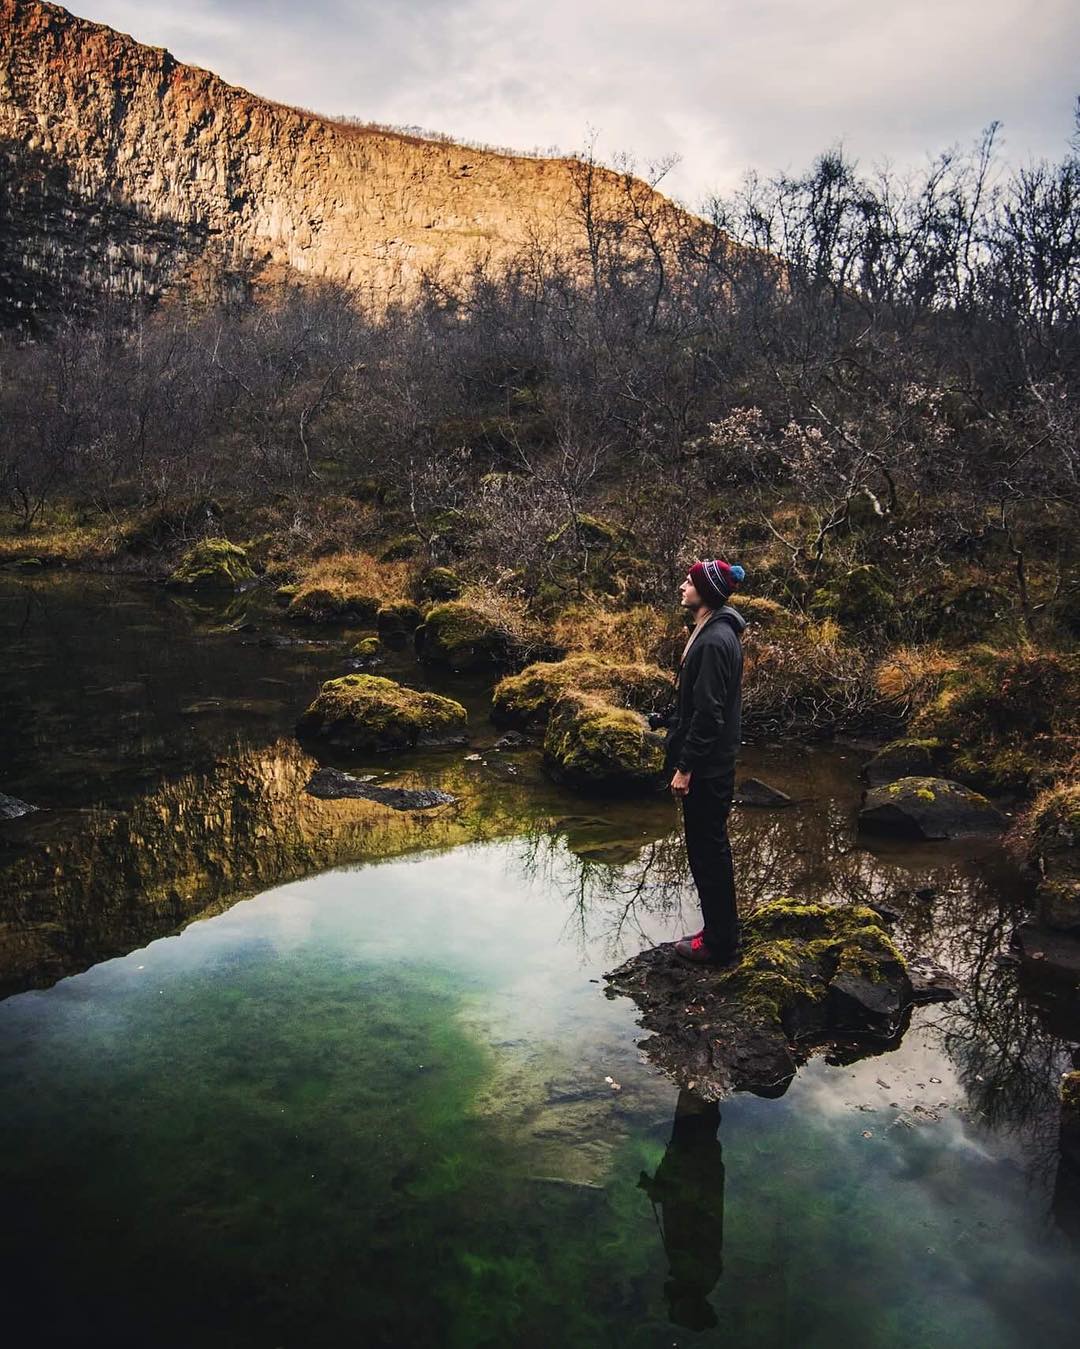 Misto kde drive byl pry mohutny vodopad - Kaňon Asbirgy
 fotka od milovane @pavlinaborakova 
Je potreba byt vdecny za tyto chvile ,protoze kazdou prozijeme pouze jednou 🙏#discover#Iceland#vscocze_ Asbirgy#canyon#photohunters#magic#meditation#place#typical#Icelandic#nature#mars#strange#chillout#paradise#highlands#mountain#love#day#jsemnikon#fotimnikonem#landscape#photographer#naturalmagicphotography#folkvibe#vscocze#gearednomad#CestujuNajisto